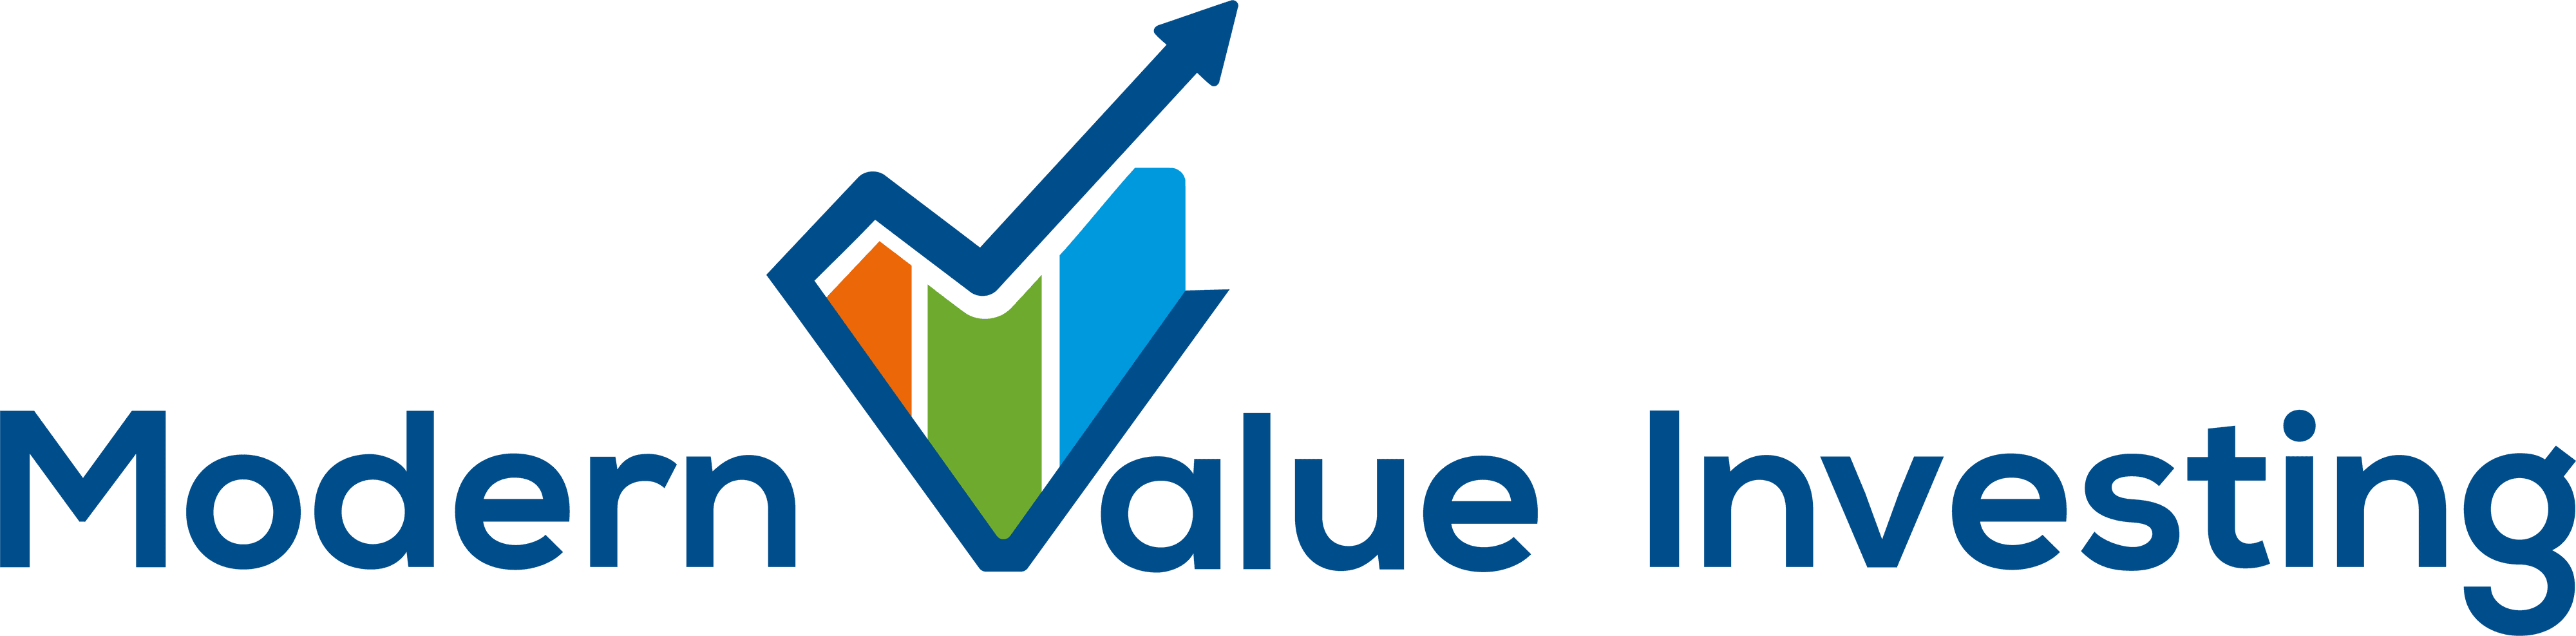 modern_value_investing banner